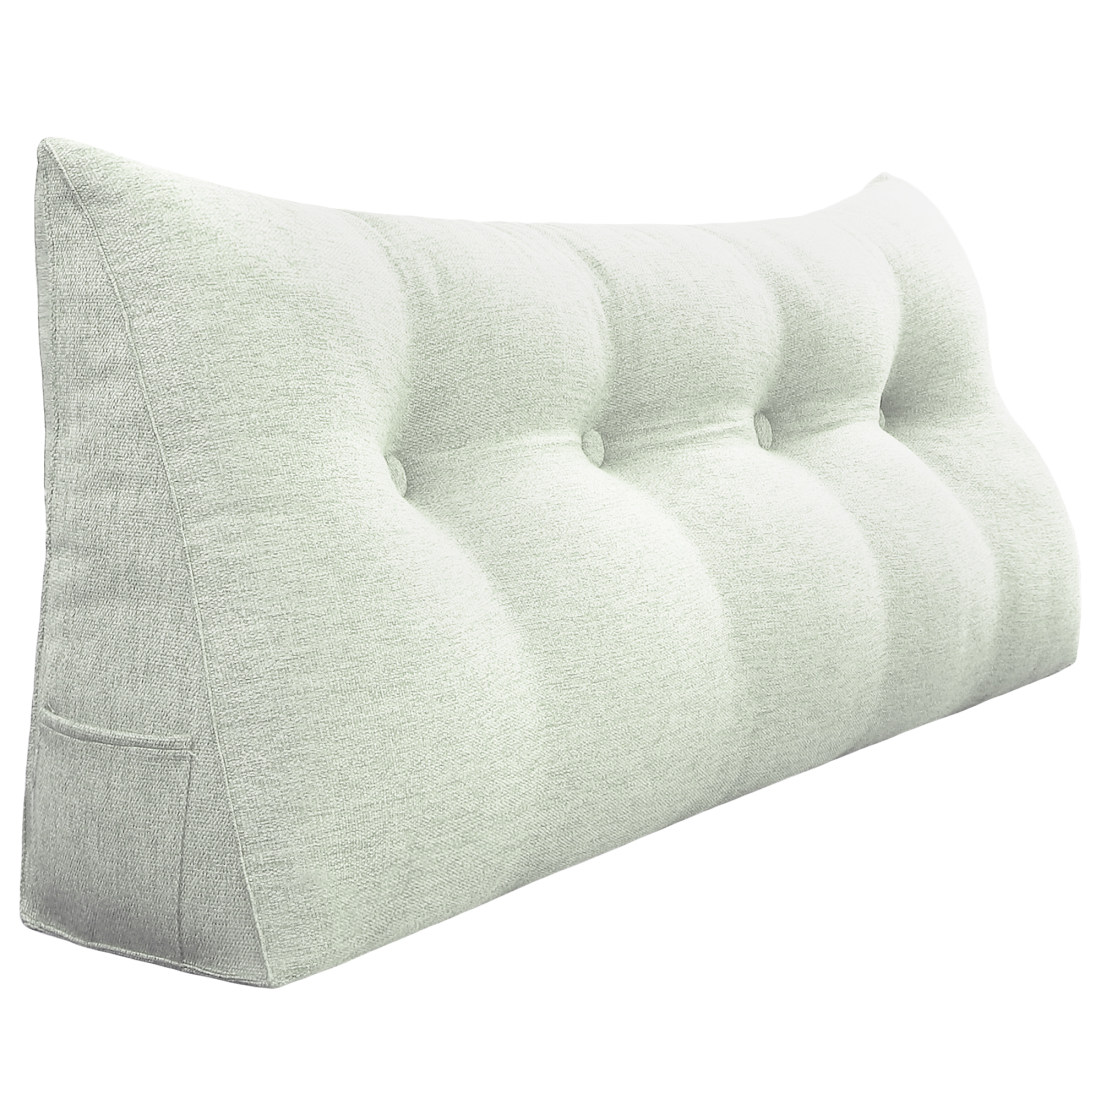 47inch Long Sofa Wedge Triangle Pillow for Relaxing & Lumbar